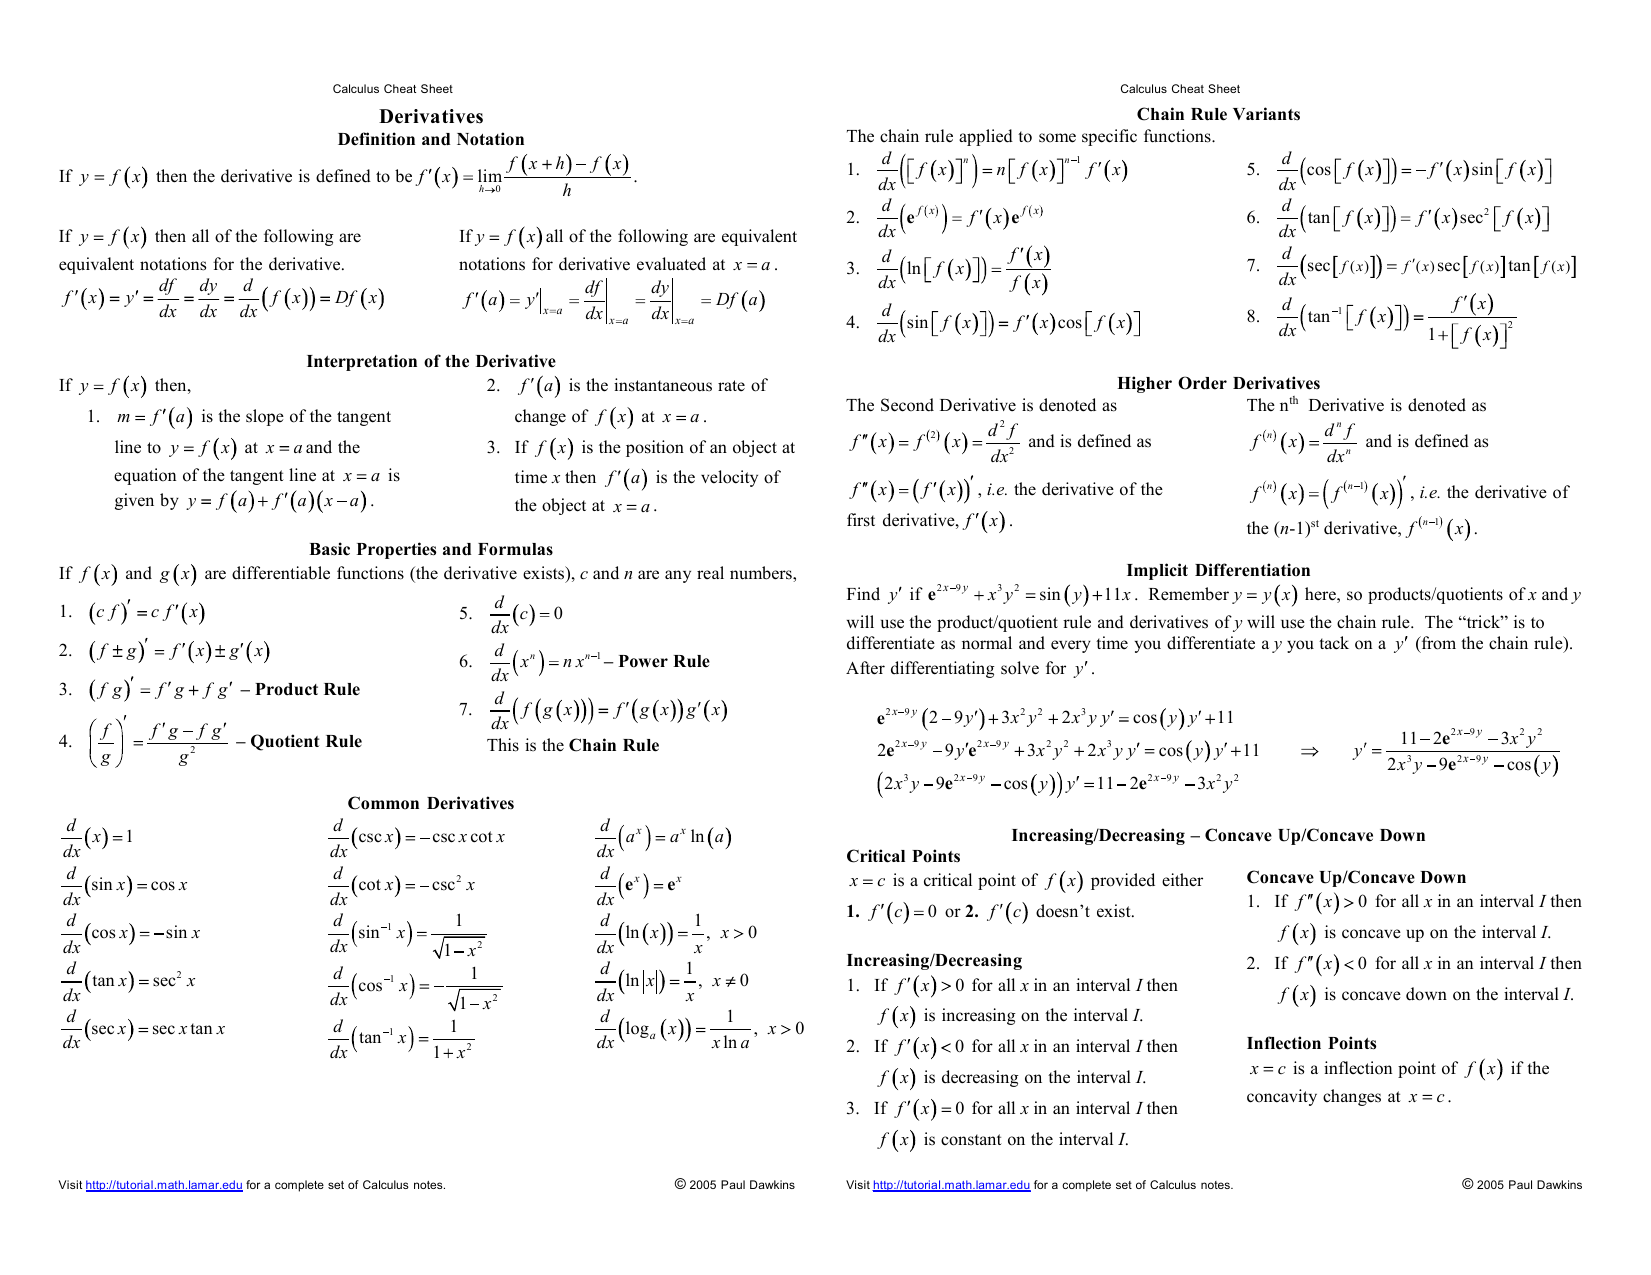 calculus 2 practice exam